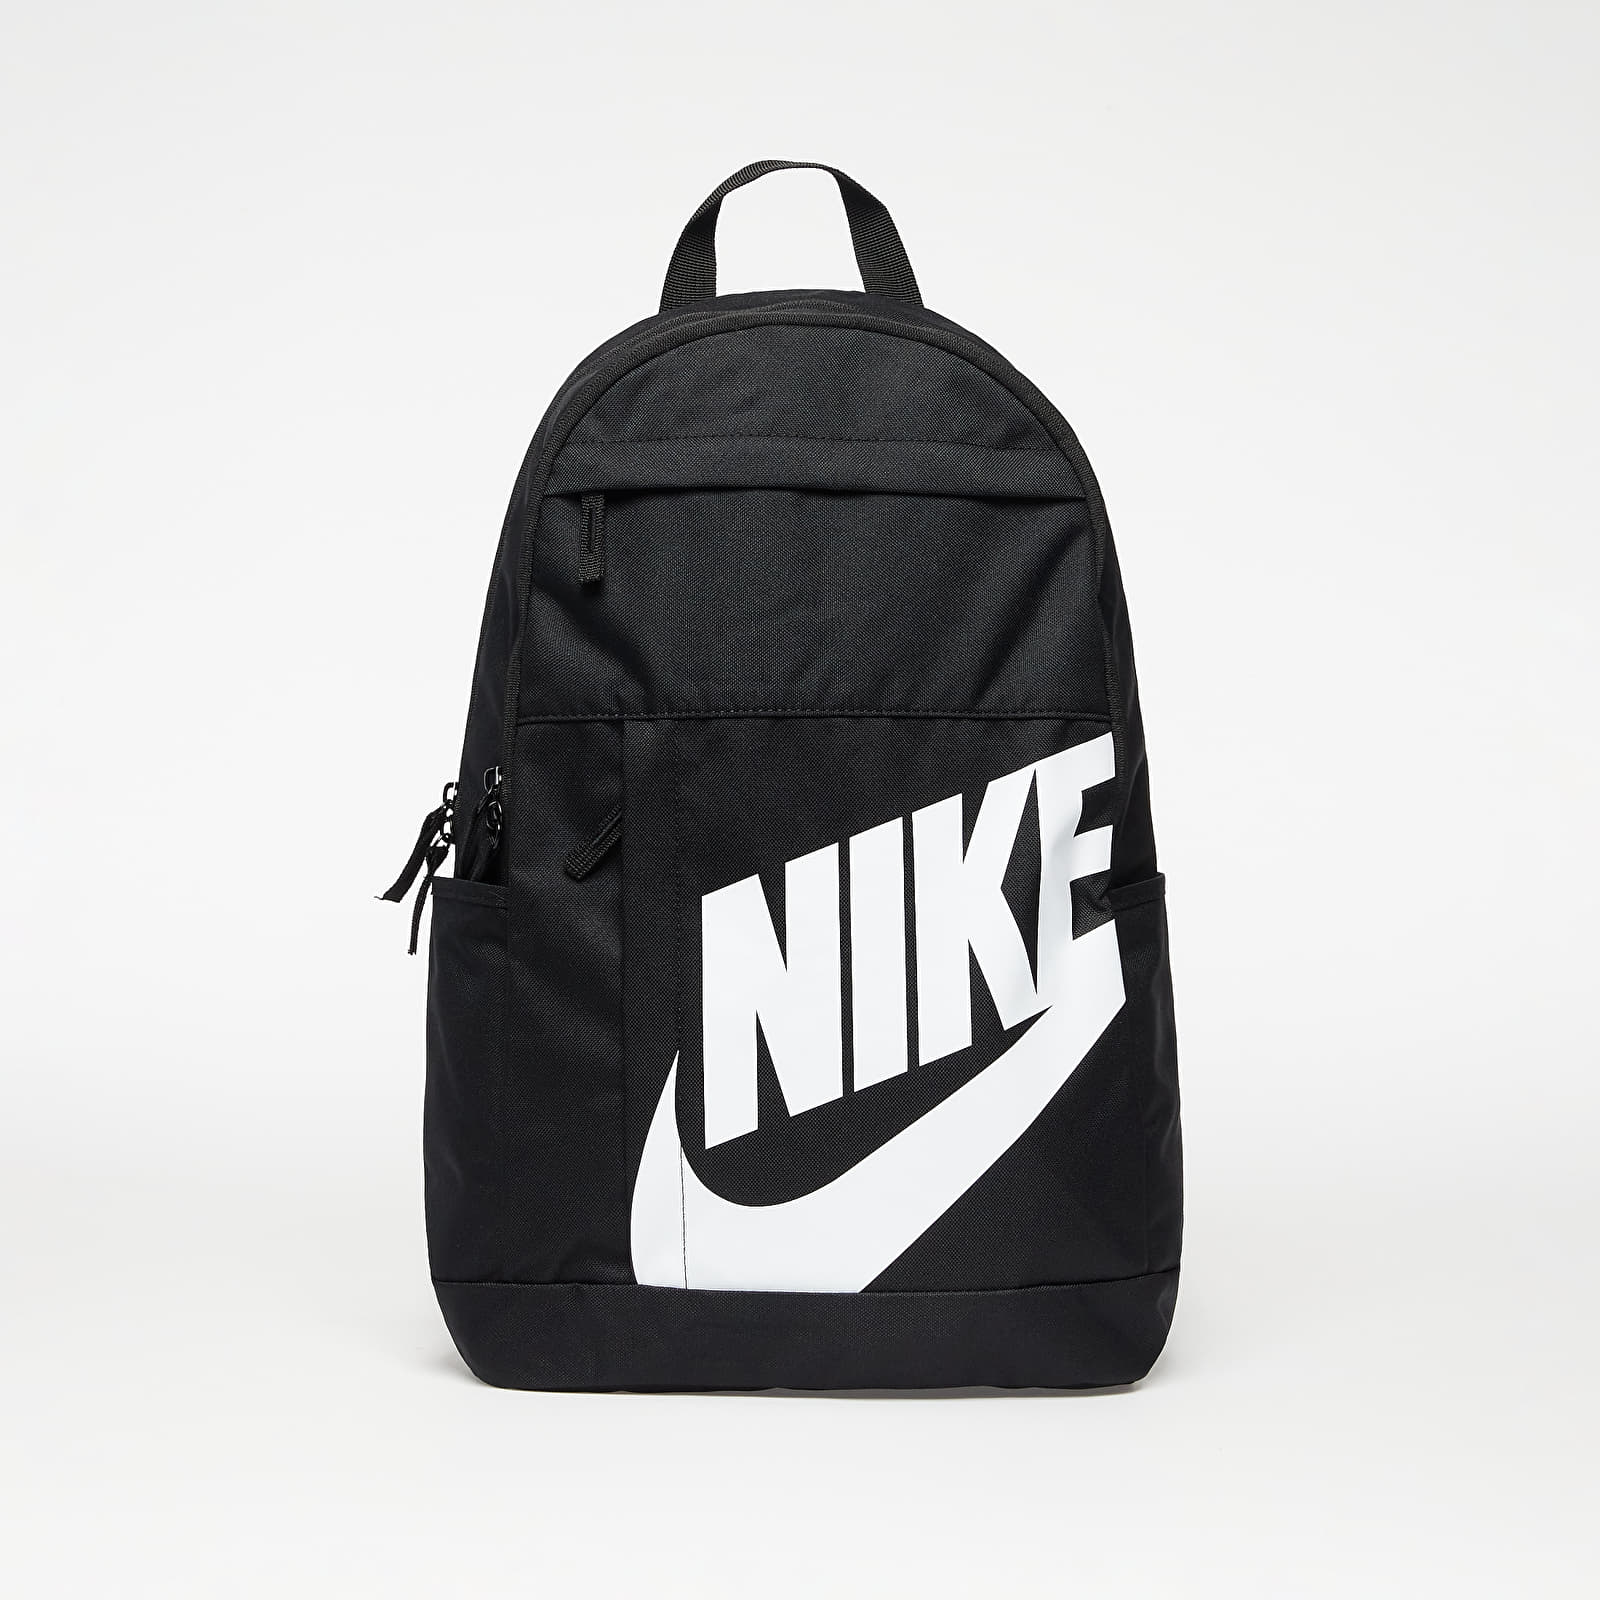 Раници Nike Backpack Black/ Black/ White 808255